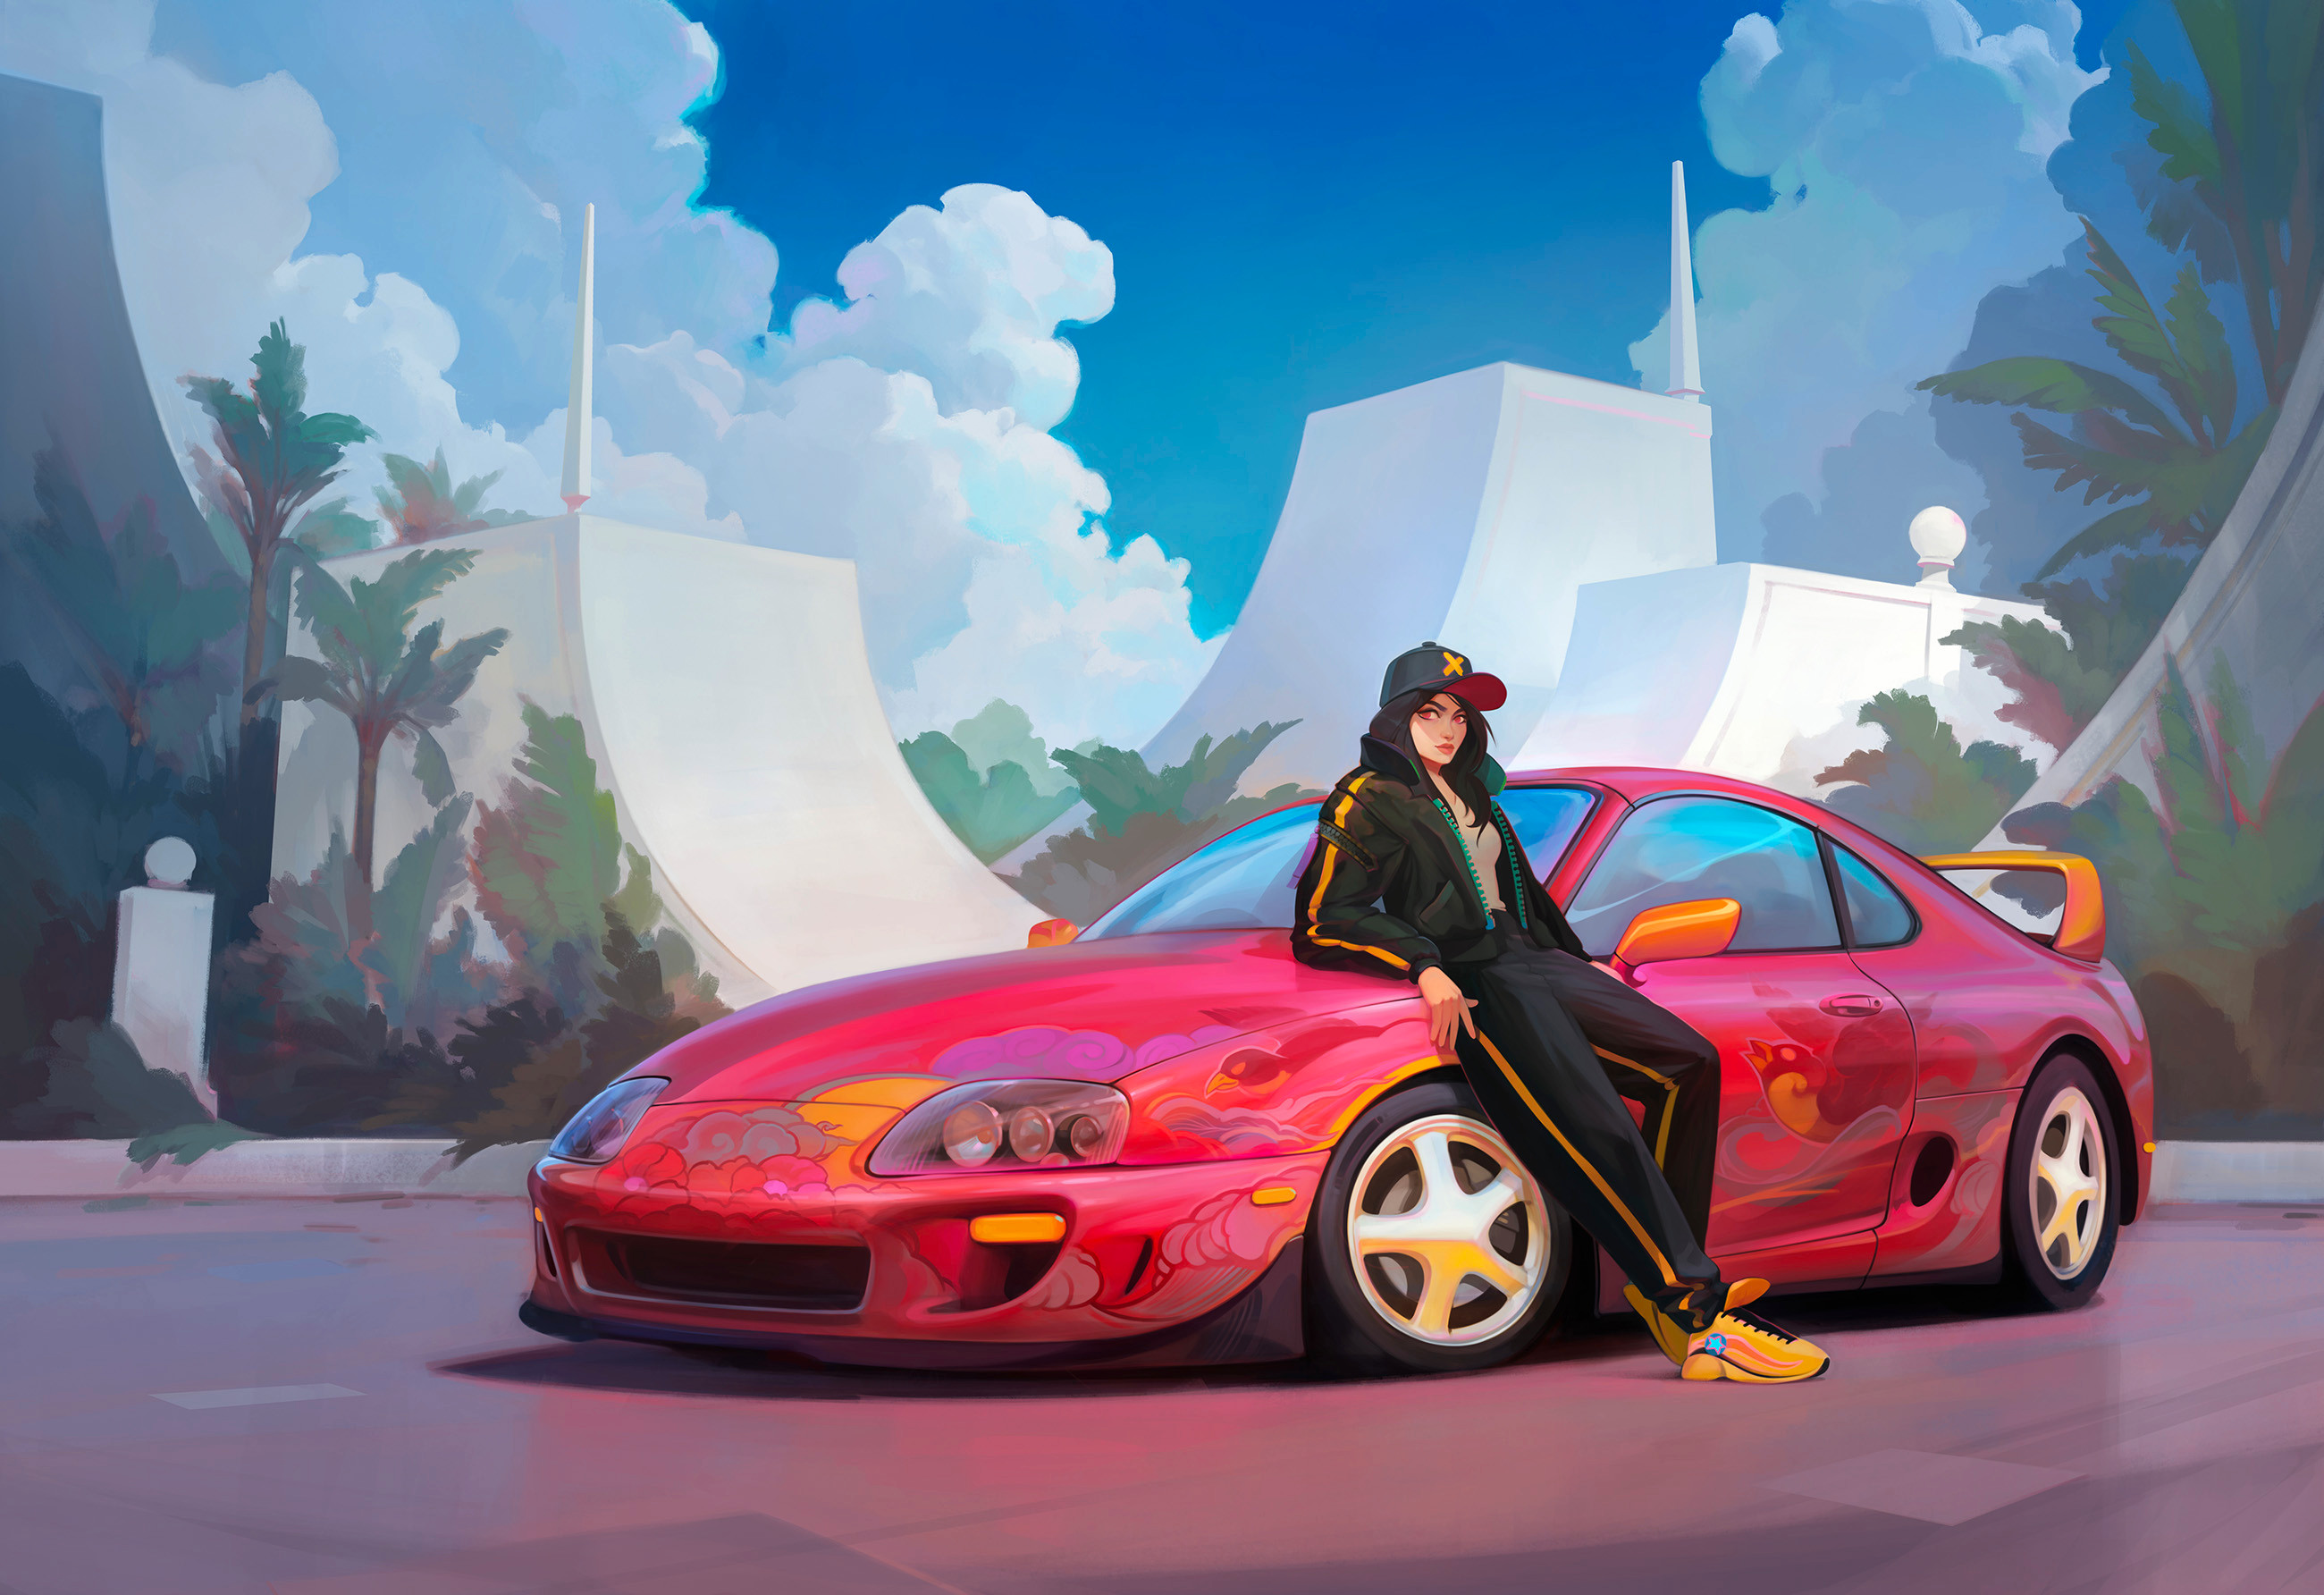 创意的戴鸭舌帽的动漫少女站在红色跑车前的插画壁纸